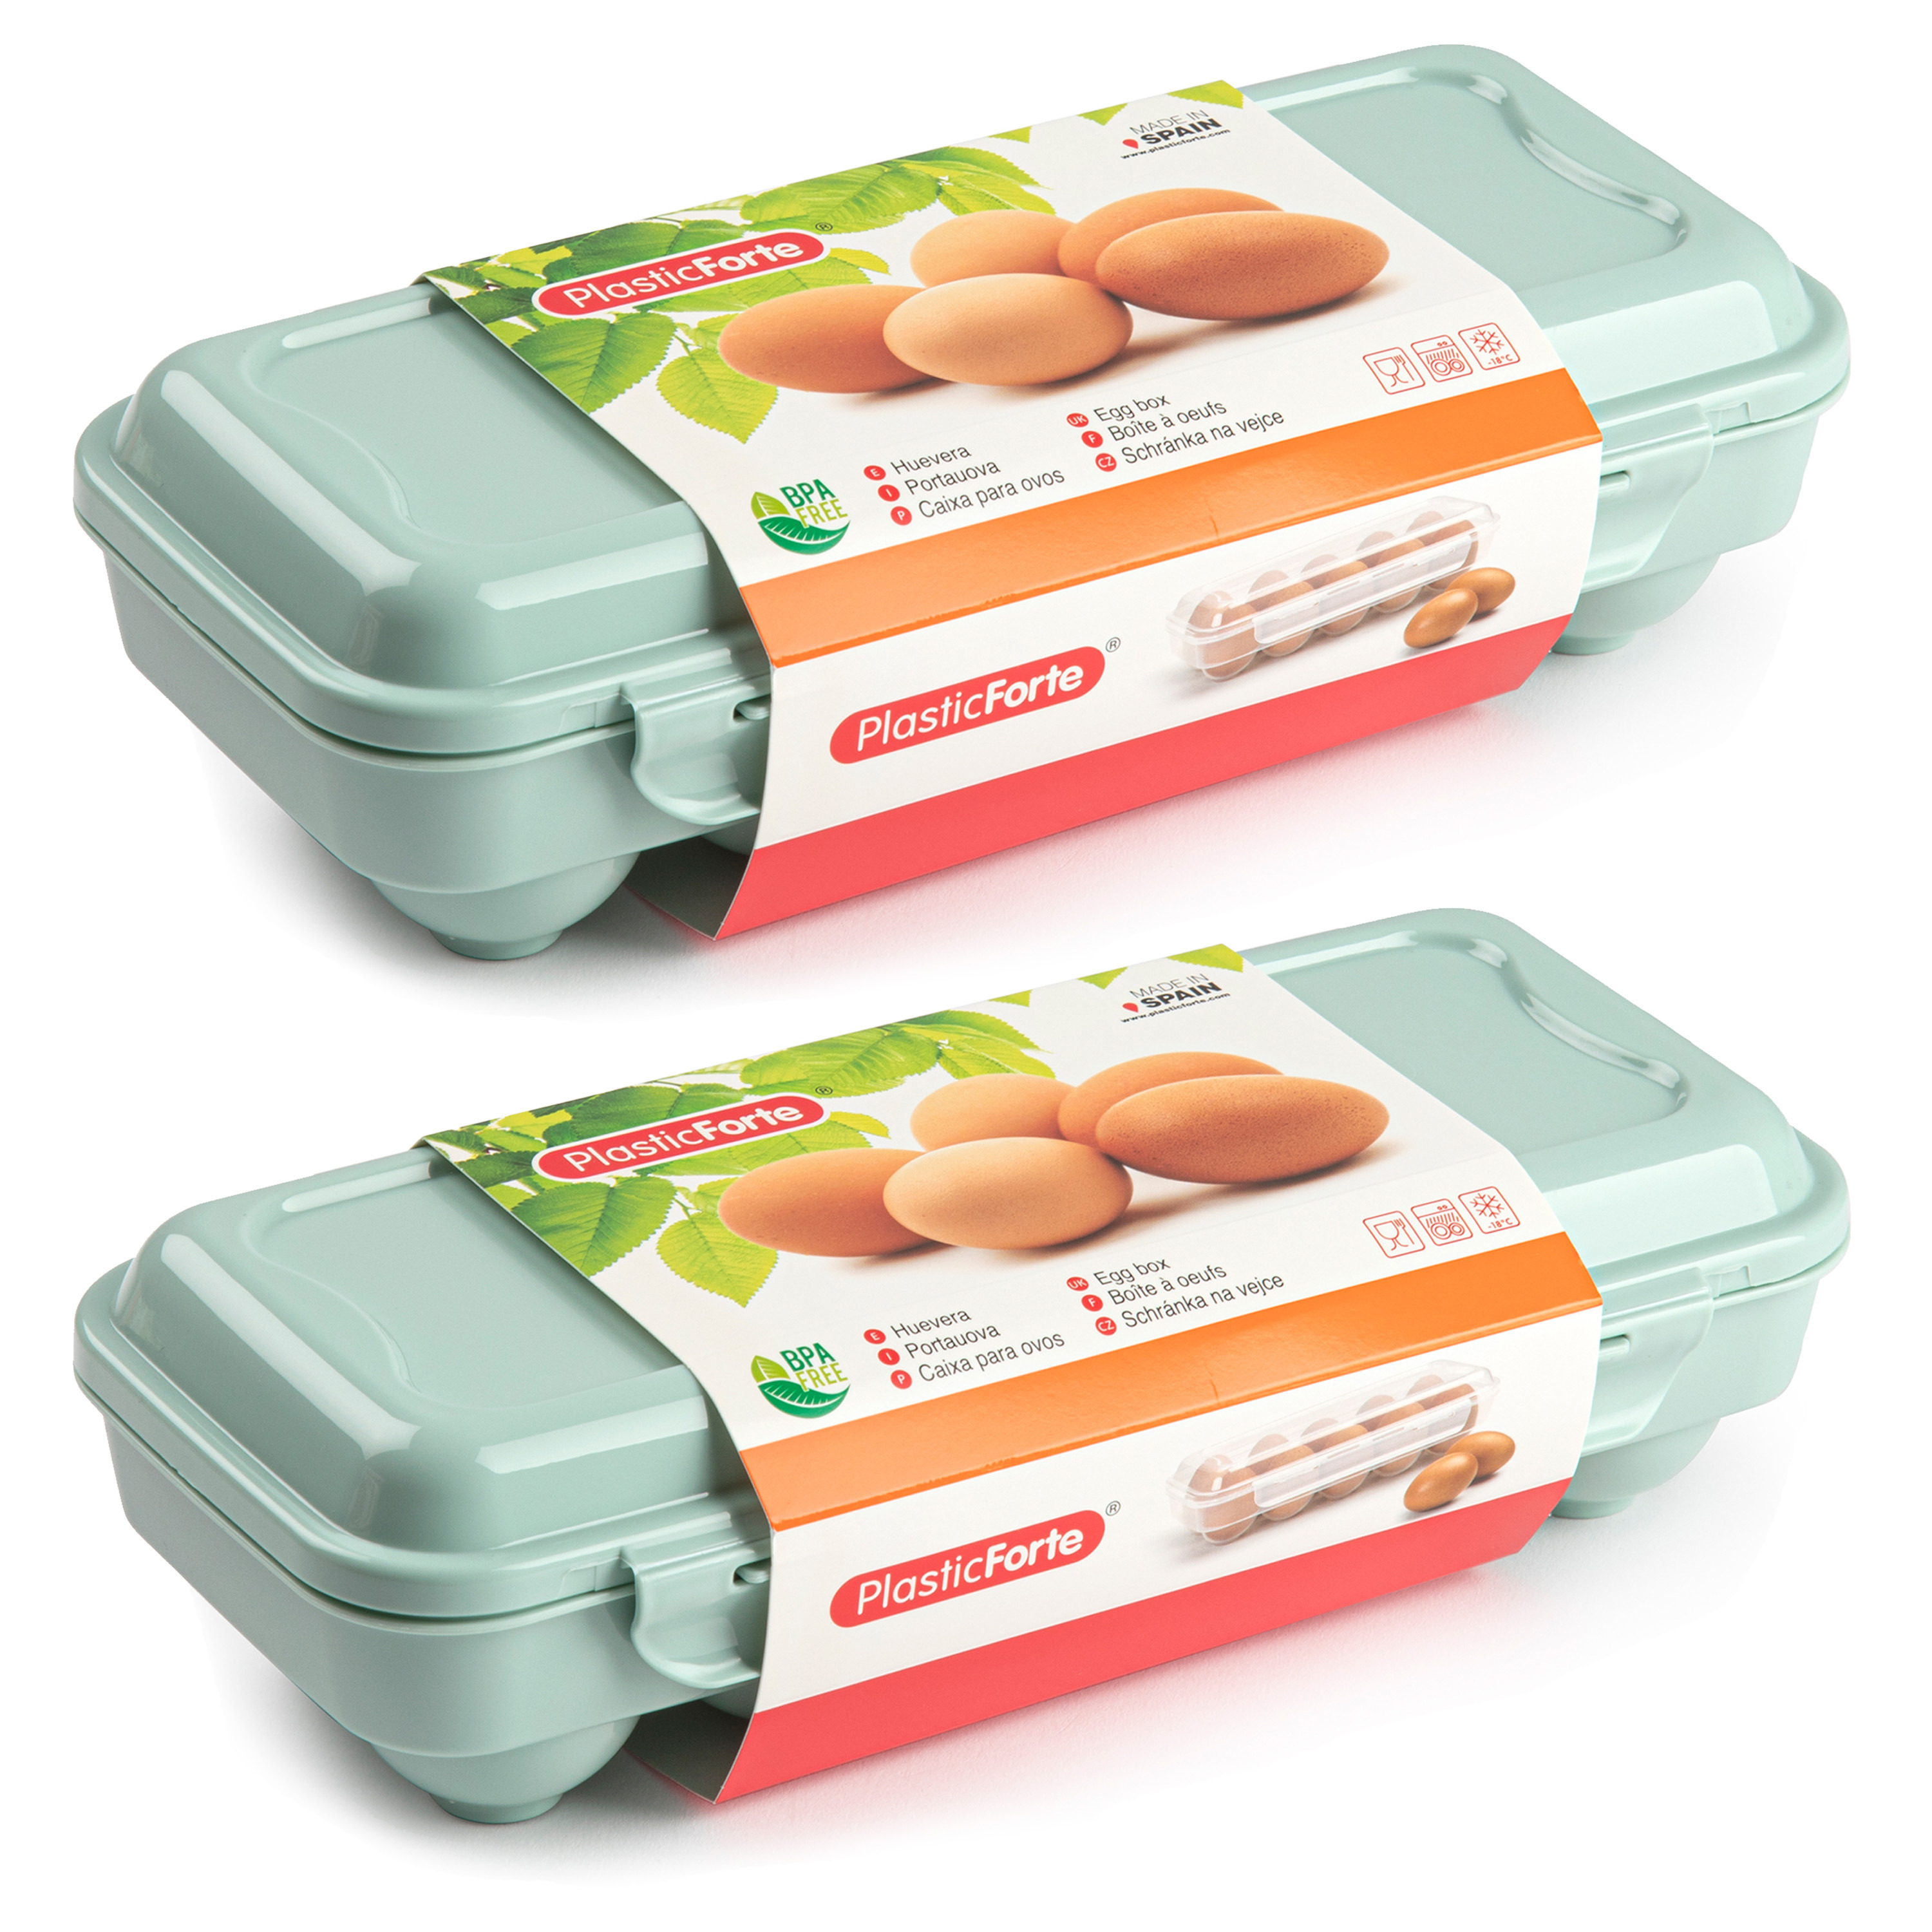 Eierdoos 2x koelkast organizer eierhouder 10 eieren mint groen kunststof 27 x 12,5 cm